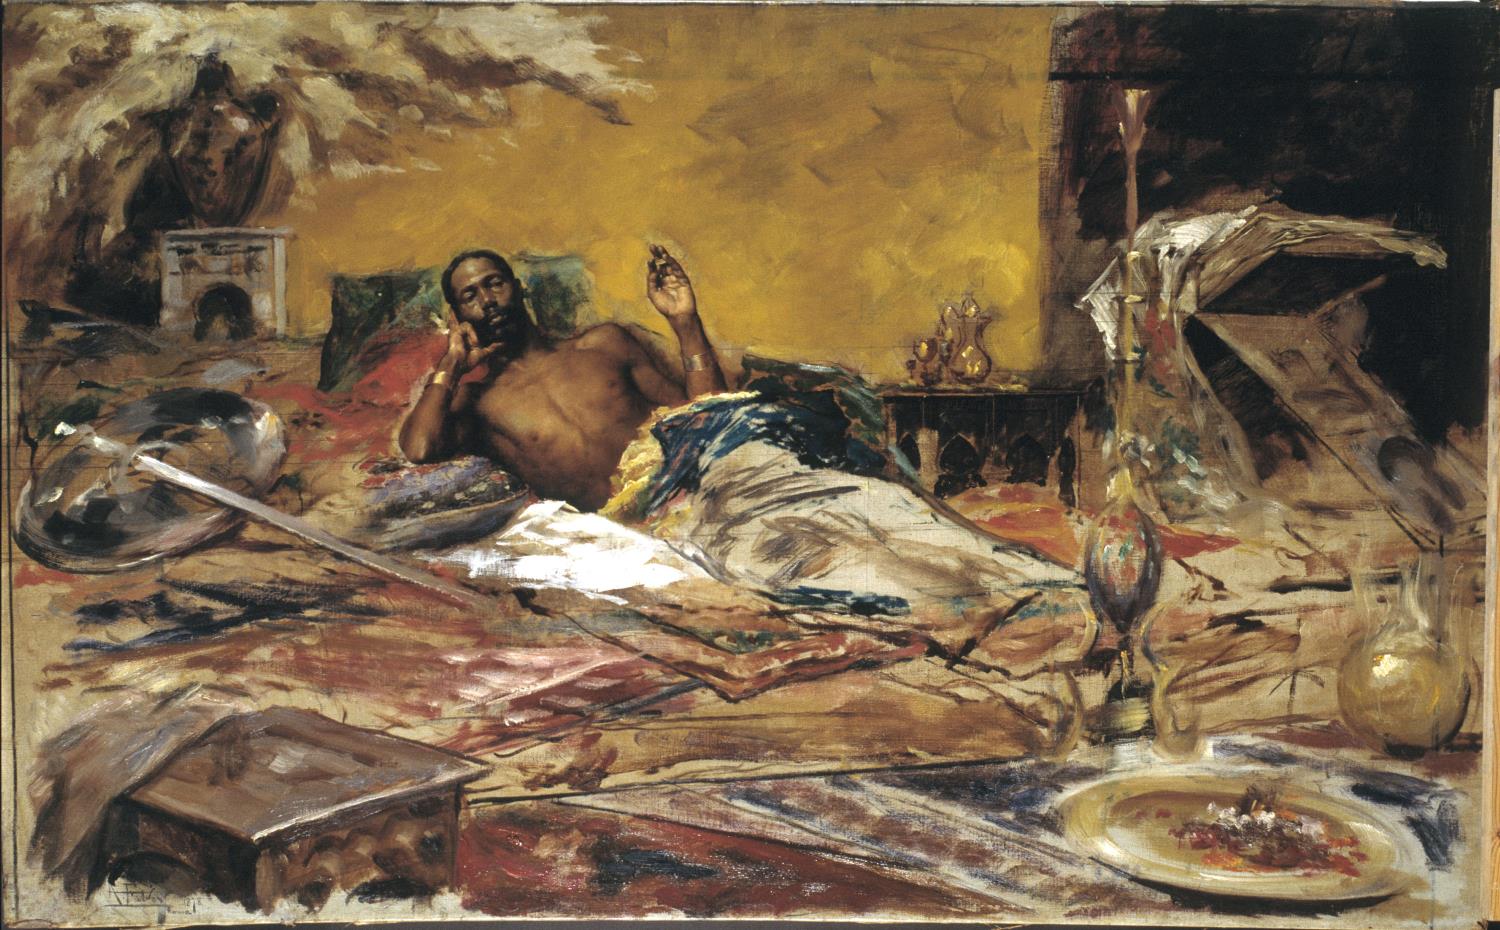 Antoni Fabrés, Repòs del guerrer, 1878